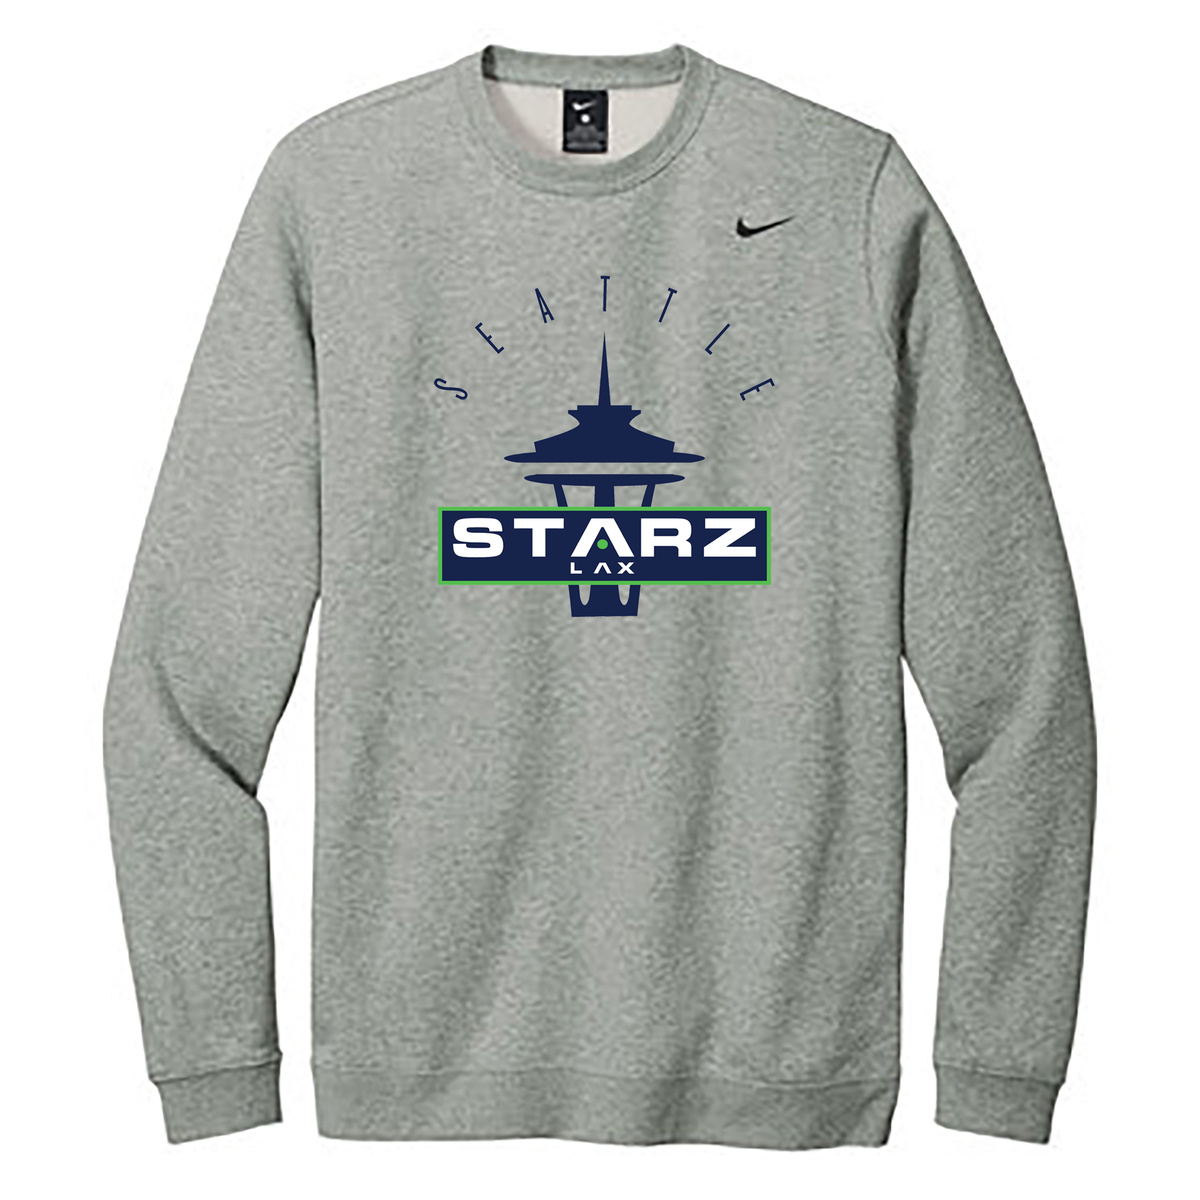 Seattle Starz Lacrosse Club Nike Fleece Crew Neck